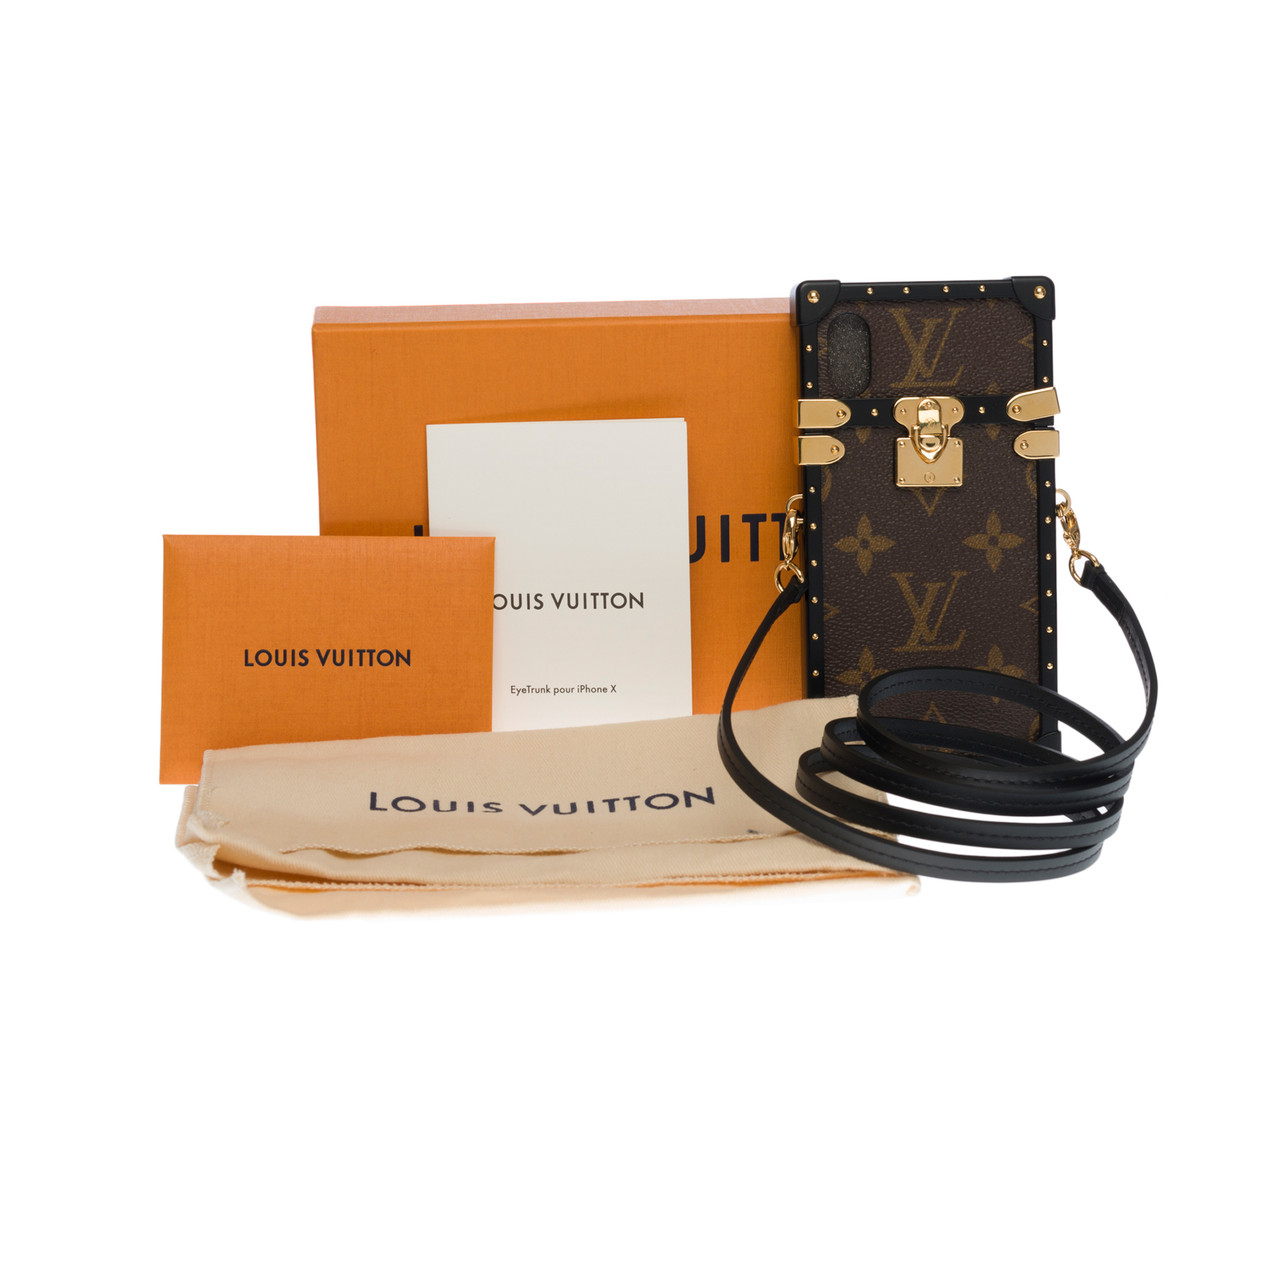 Louis Vuitton dévoile des coques iPhone au design sac, pas pour toutes  les bourses ?